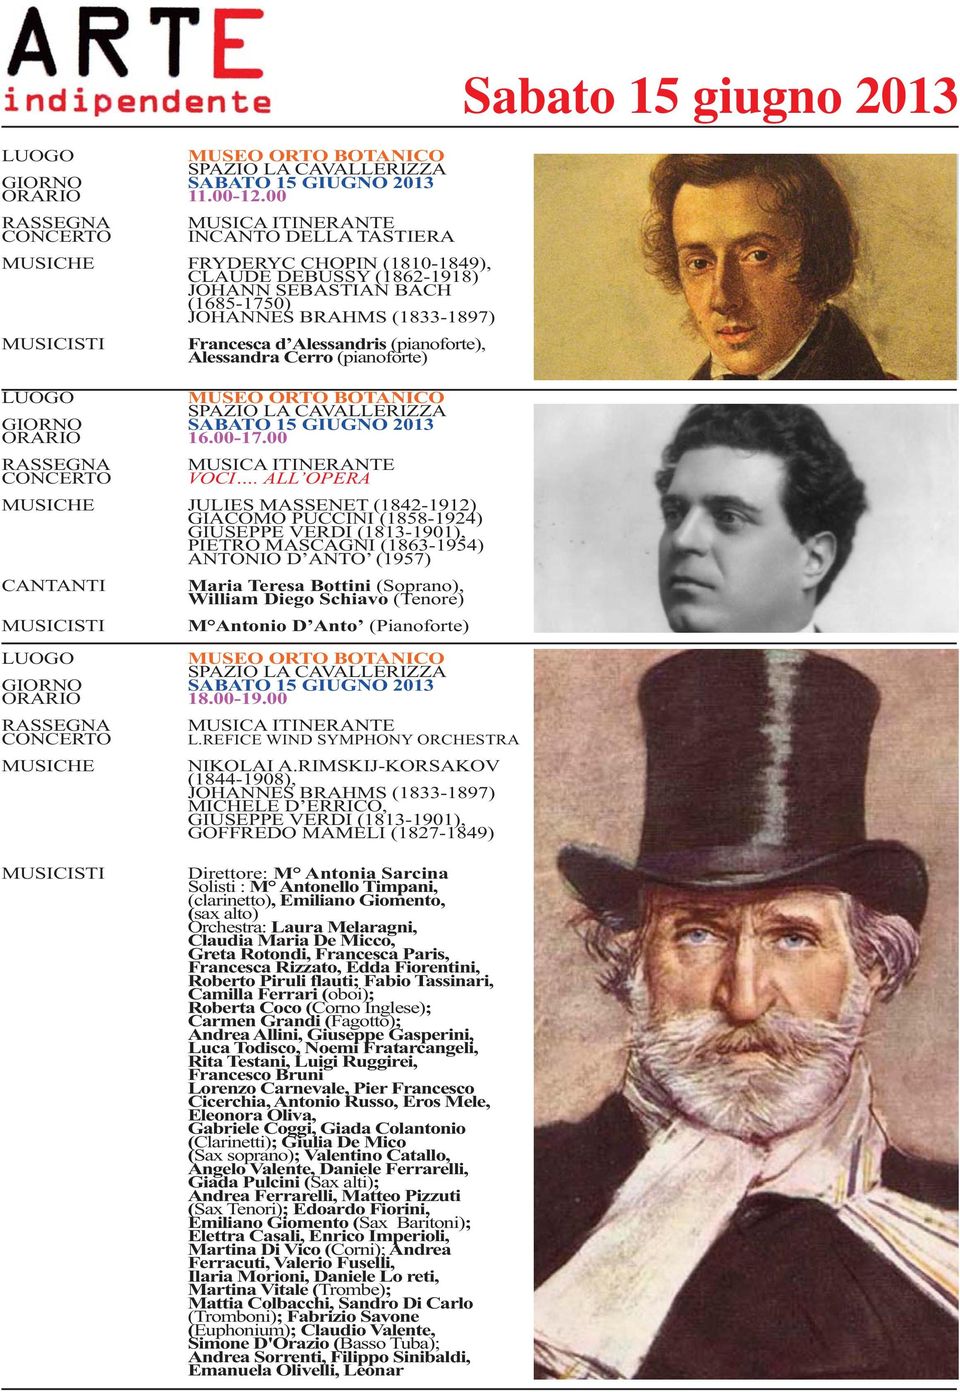 ALL OPERA JULIES MASSENET (1842-1912) GIACOMO PUCCINI (1858-1924) GIUSEPPE VERDI (1813-1901), PIETRO MASCAGNI (1863-1954) ANTONIO D ANTO (1957) CANTANTI Maria Teresa Bottini (Soprano), William Diego